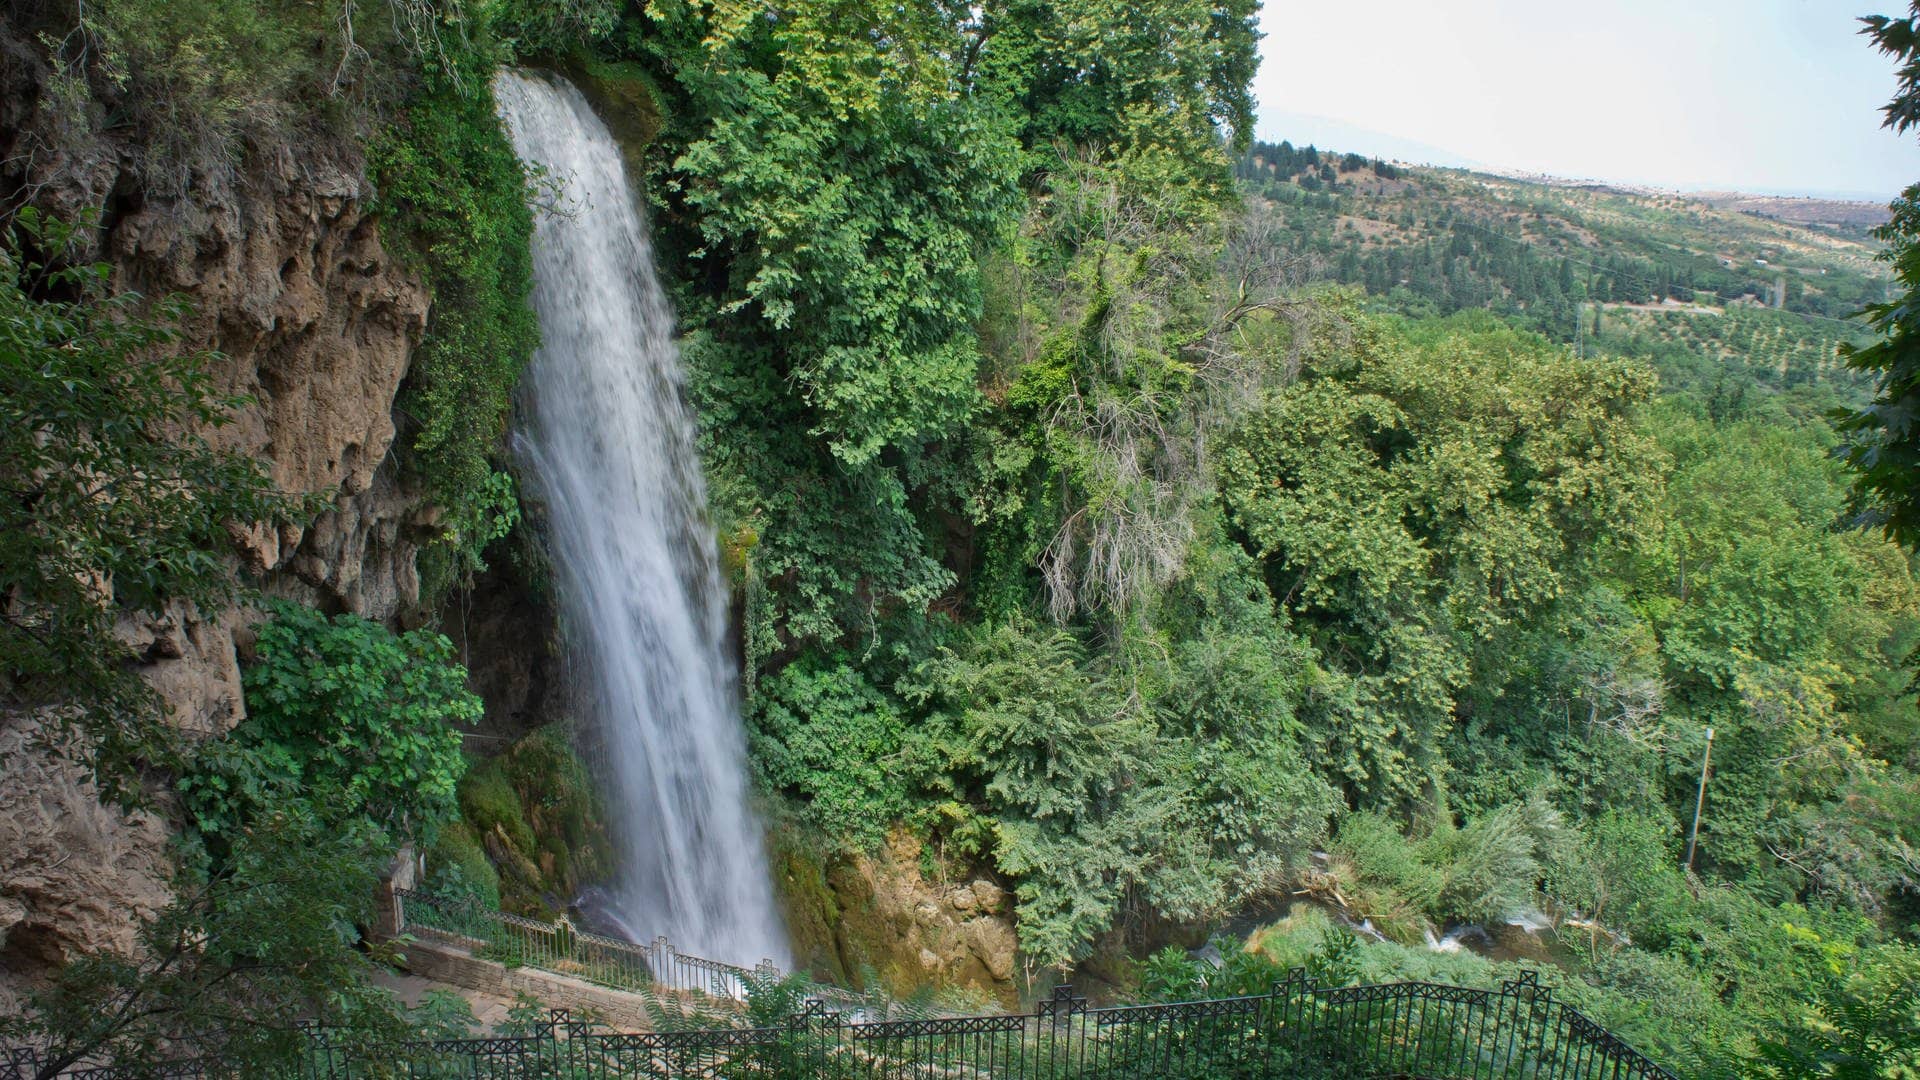 Edessa bietet Städtetrip mit Stadt, Natur und einem prächtigen Wasserfall, der neben der historischen Stadt dahinfließt – alles dabei für Touristen.